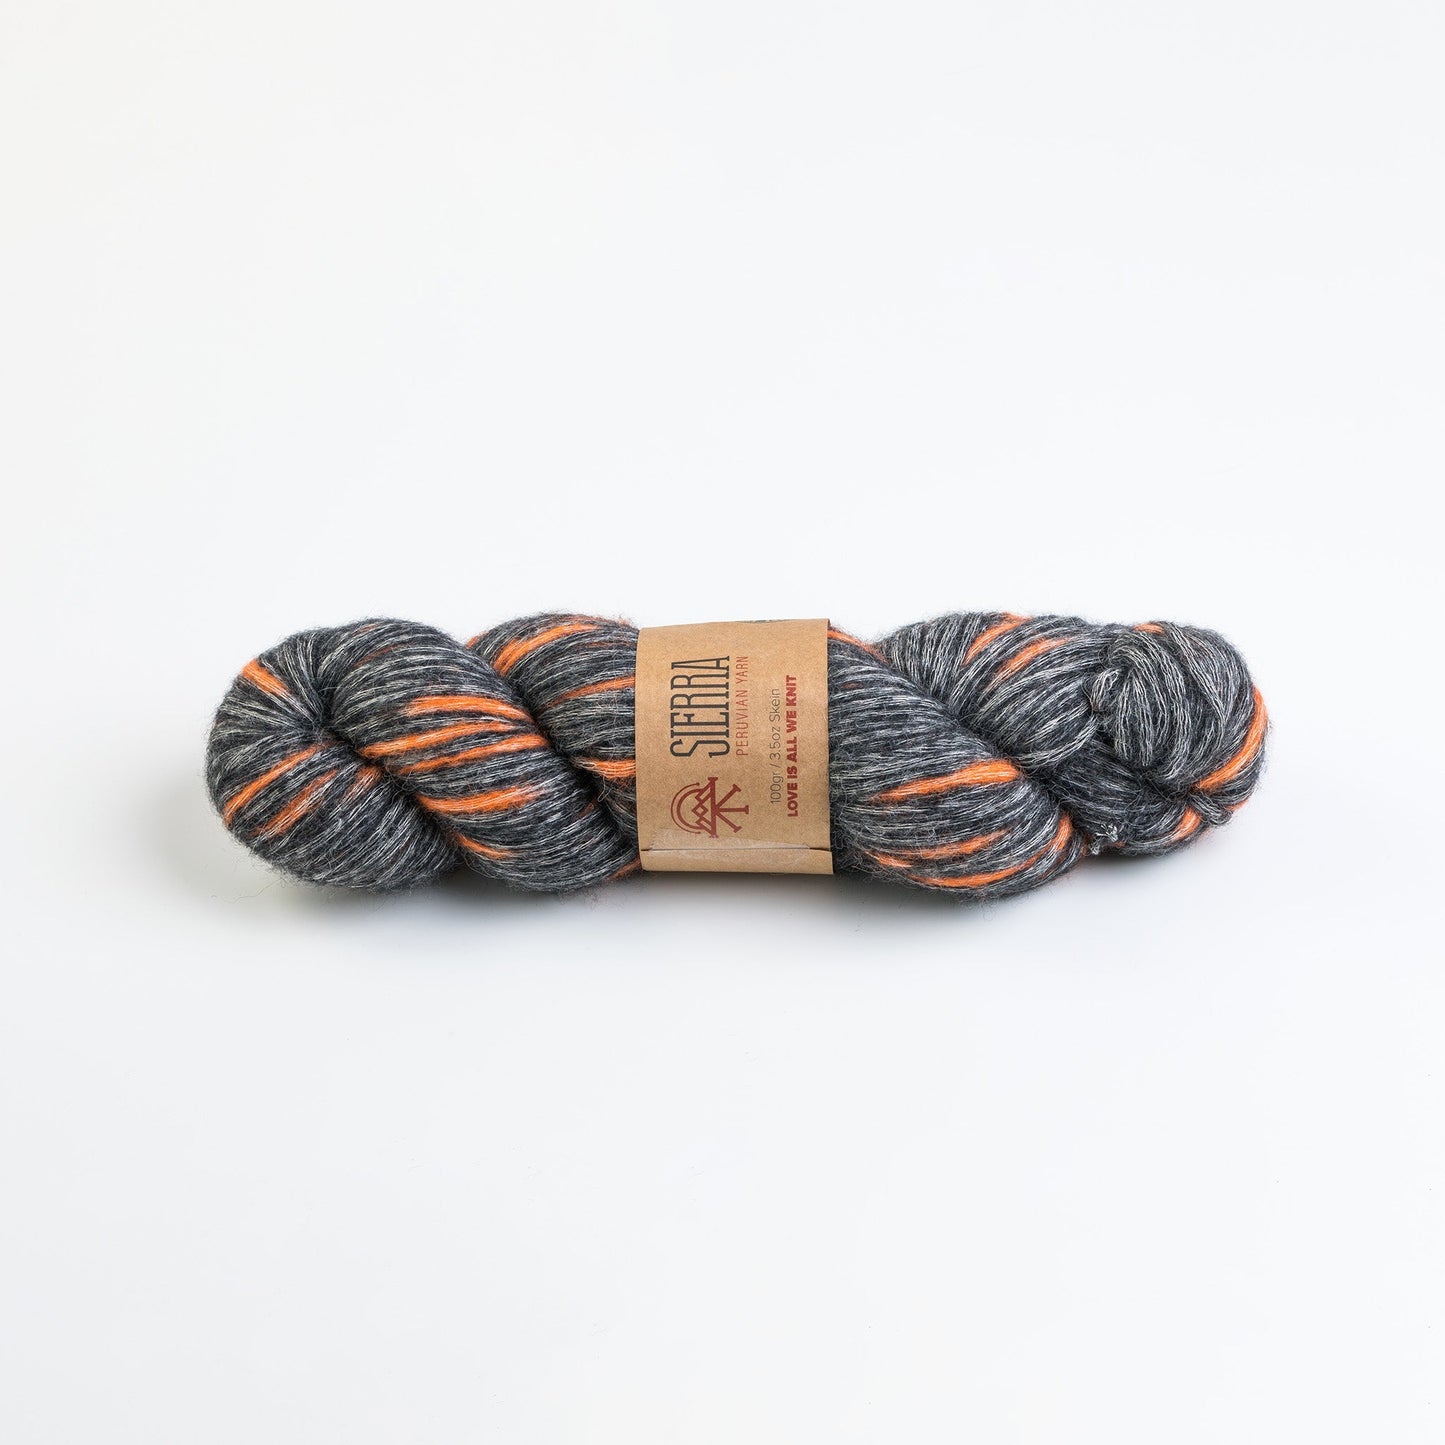 Sierra Beret - Beginner's Crochet Kit